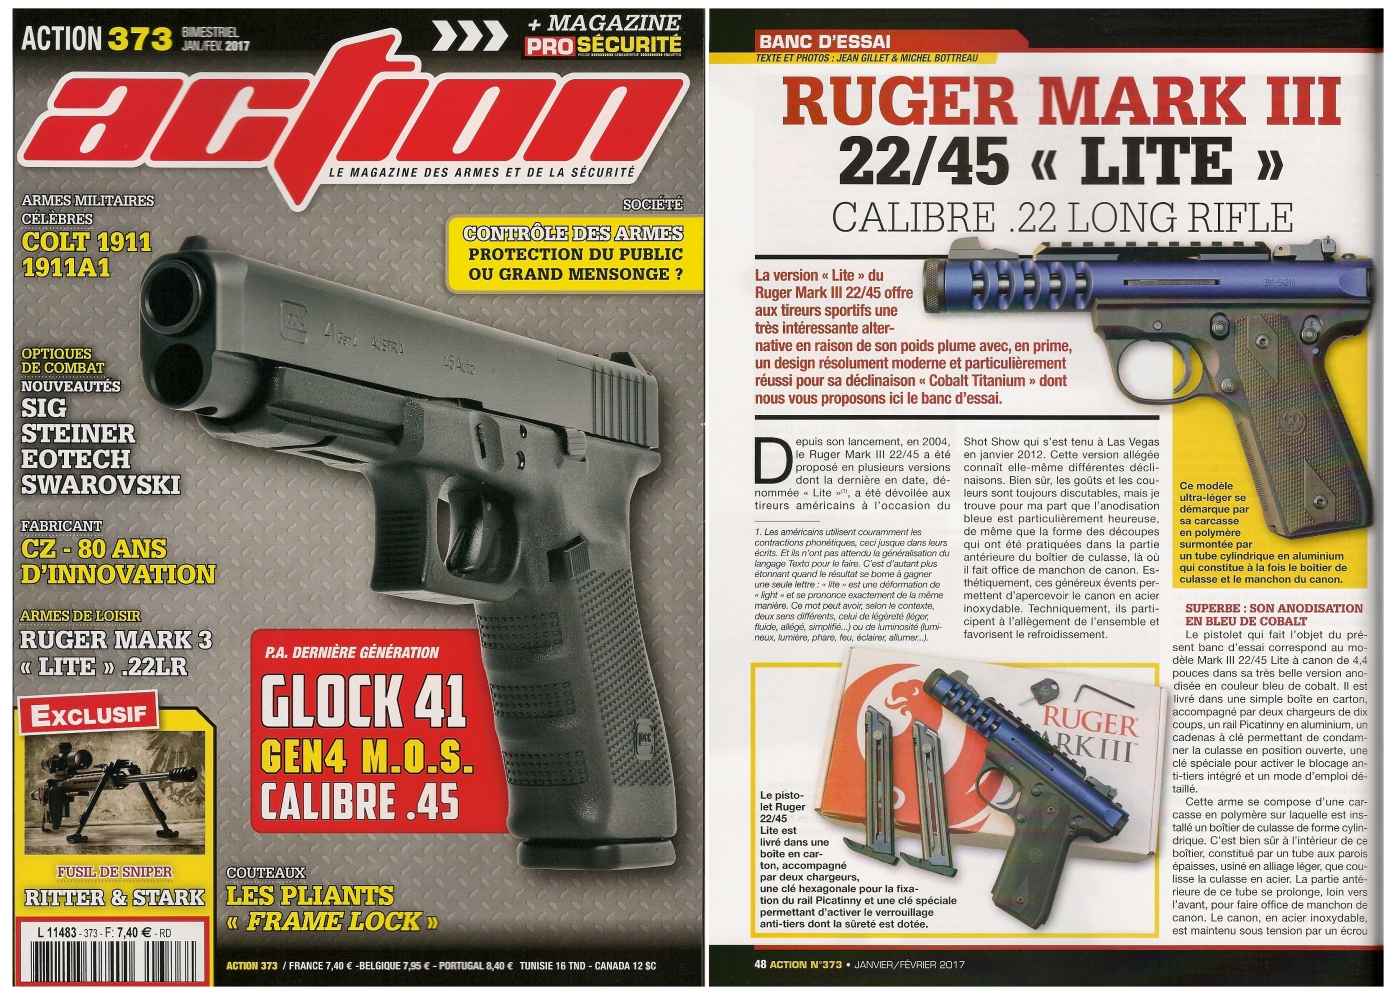 Le banc d’essai du pistolet Ruger modèle Mark III 22/45 « Lite » a été publié sur 6 pages dans le magazine Action n°373 (janvier/février 2017).